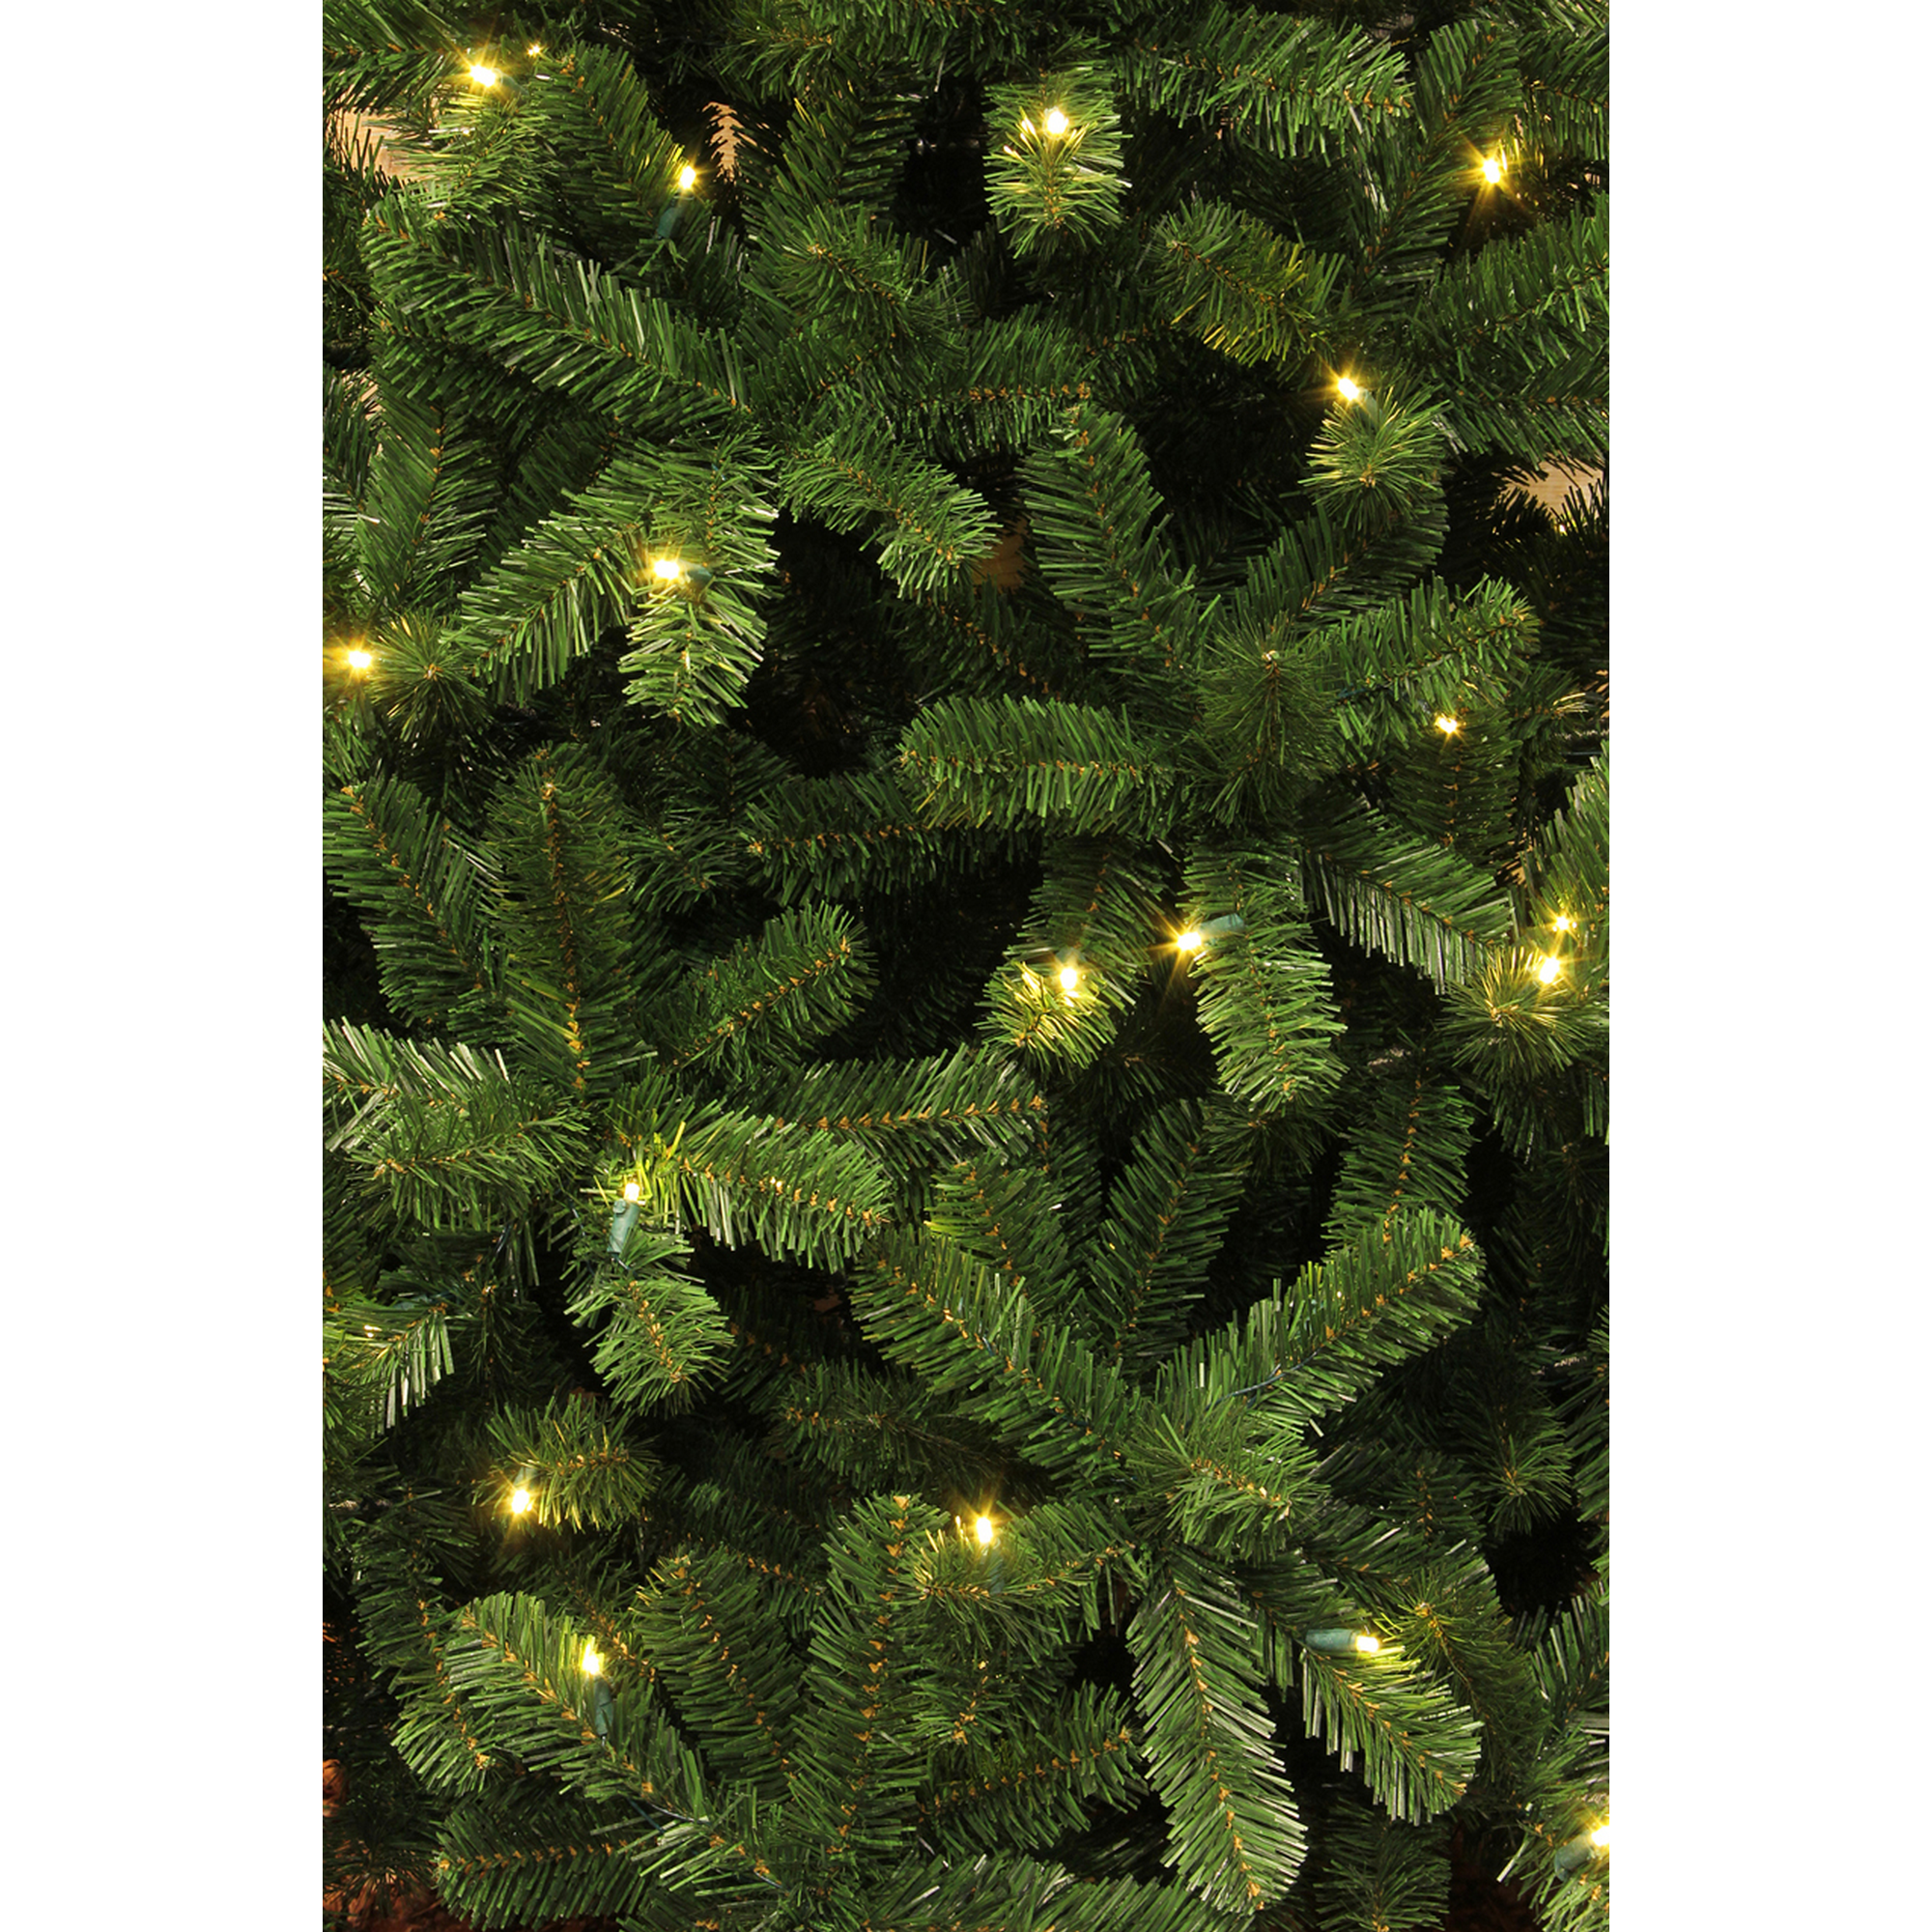 Künstlicher Weihnachtsbaum 'Charlton' grün 185 cm, mit LED-Beleuchtung + product picture